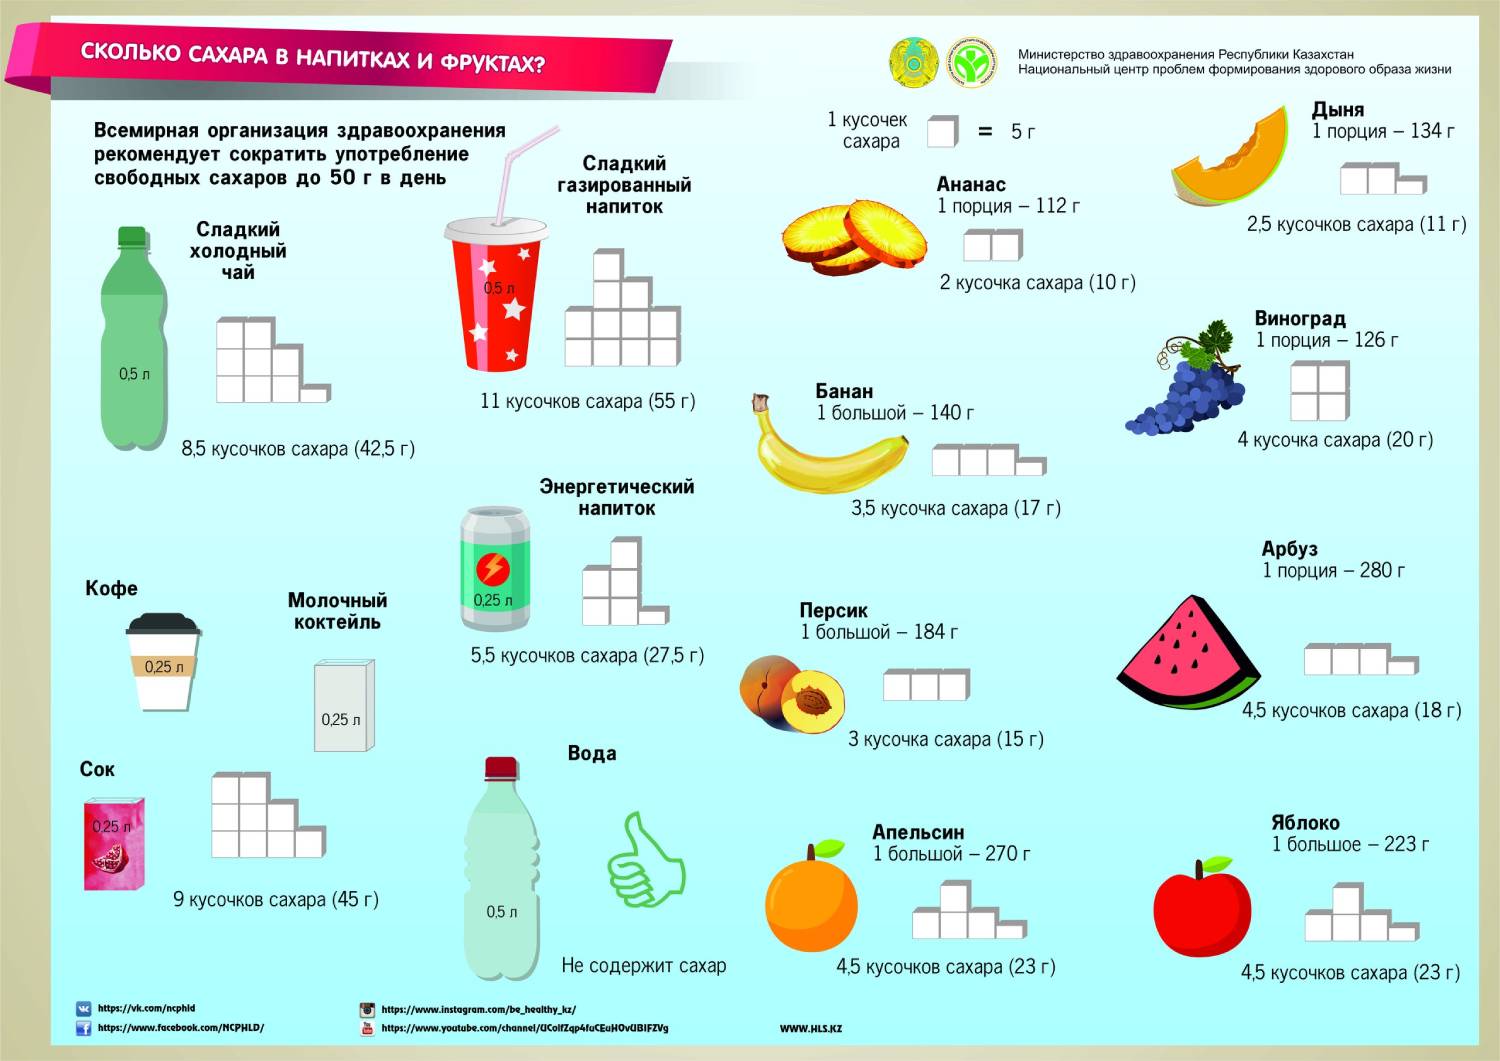 Какое количество сахара рекомендуется употребление детьми. Количество сахара в банане. Количество сахара в фруктах. Сколько сахаоув банане. Сколько сахара в.Бабане.